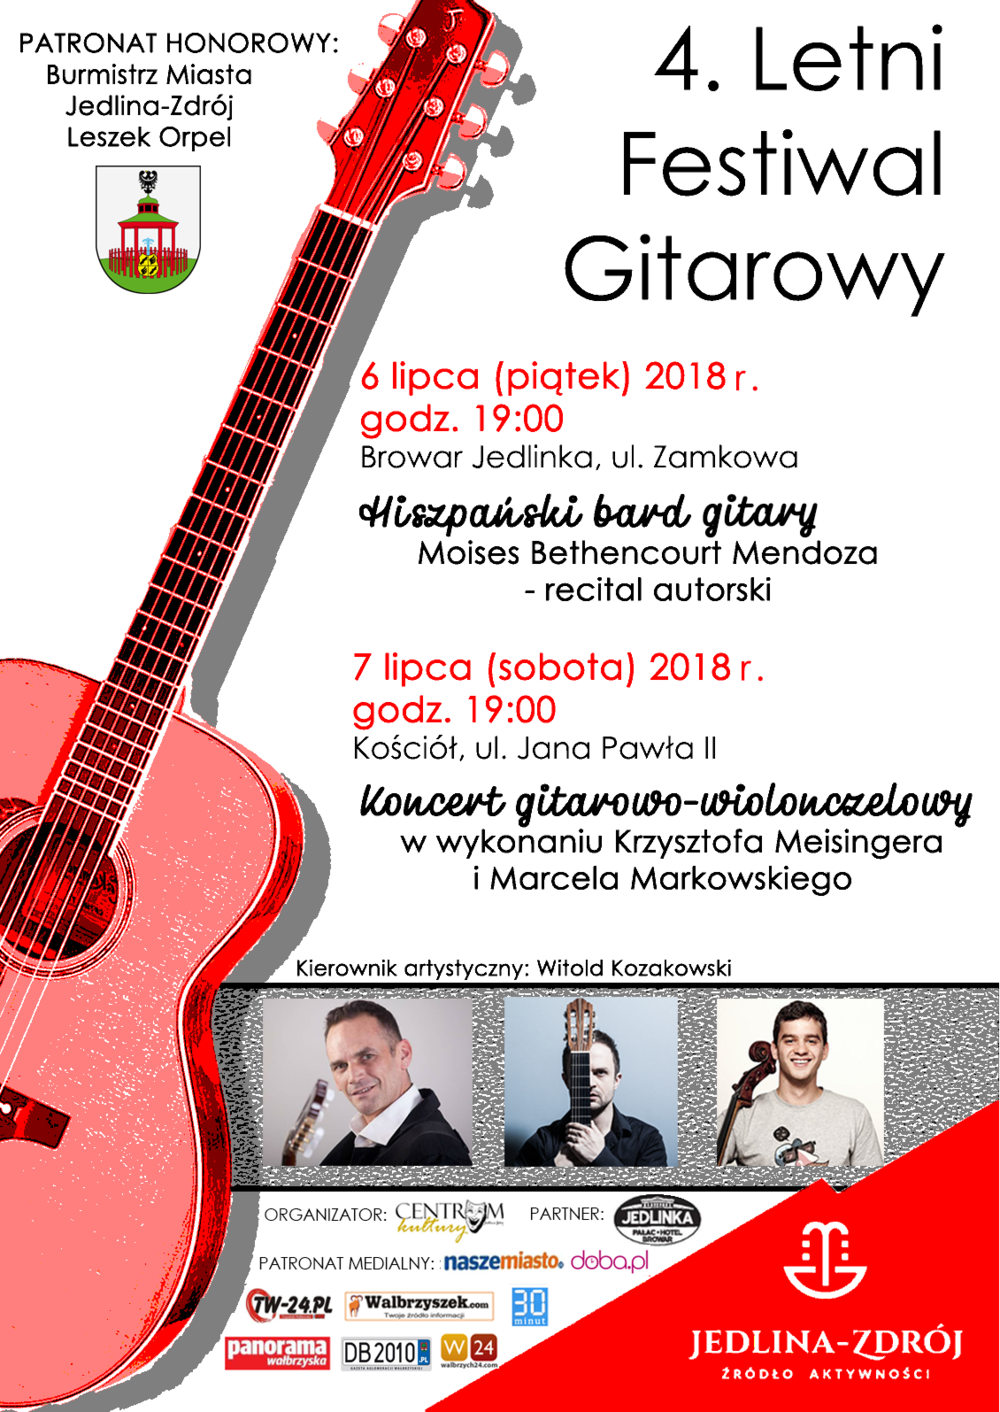 4. Letni Festiwal Gitarowy